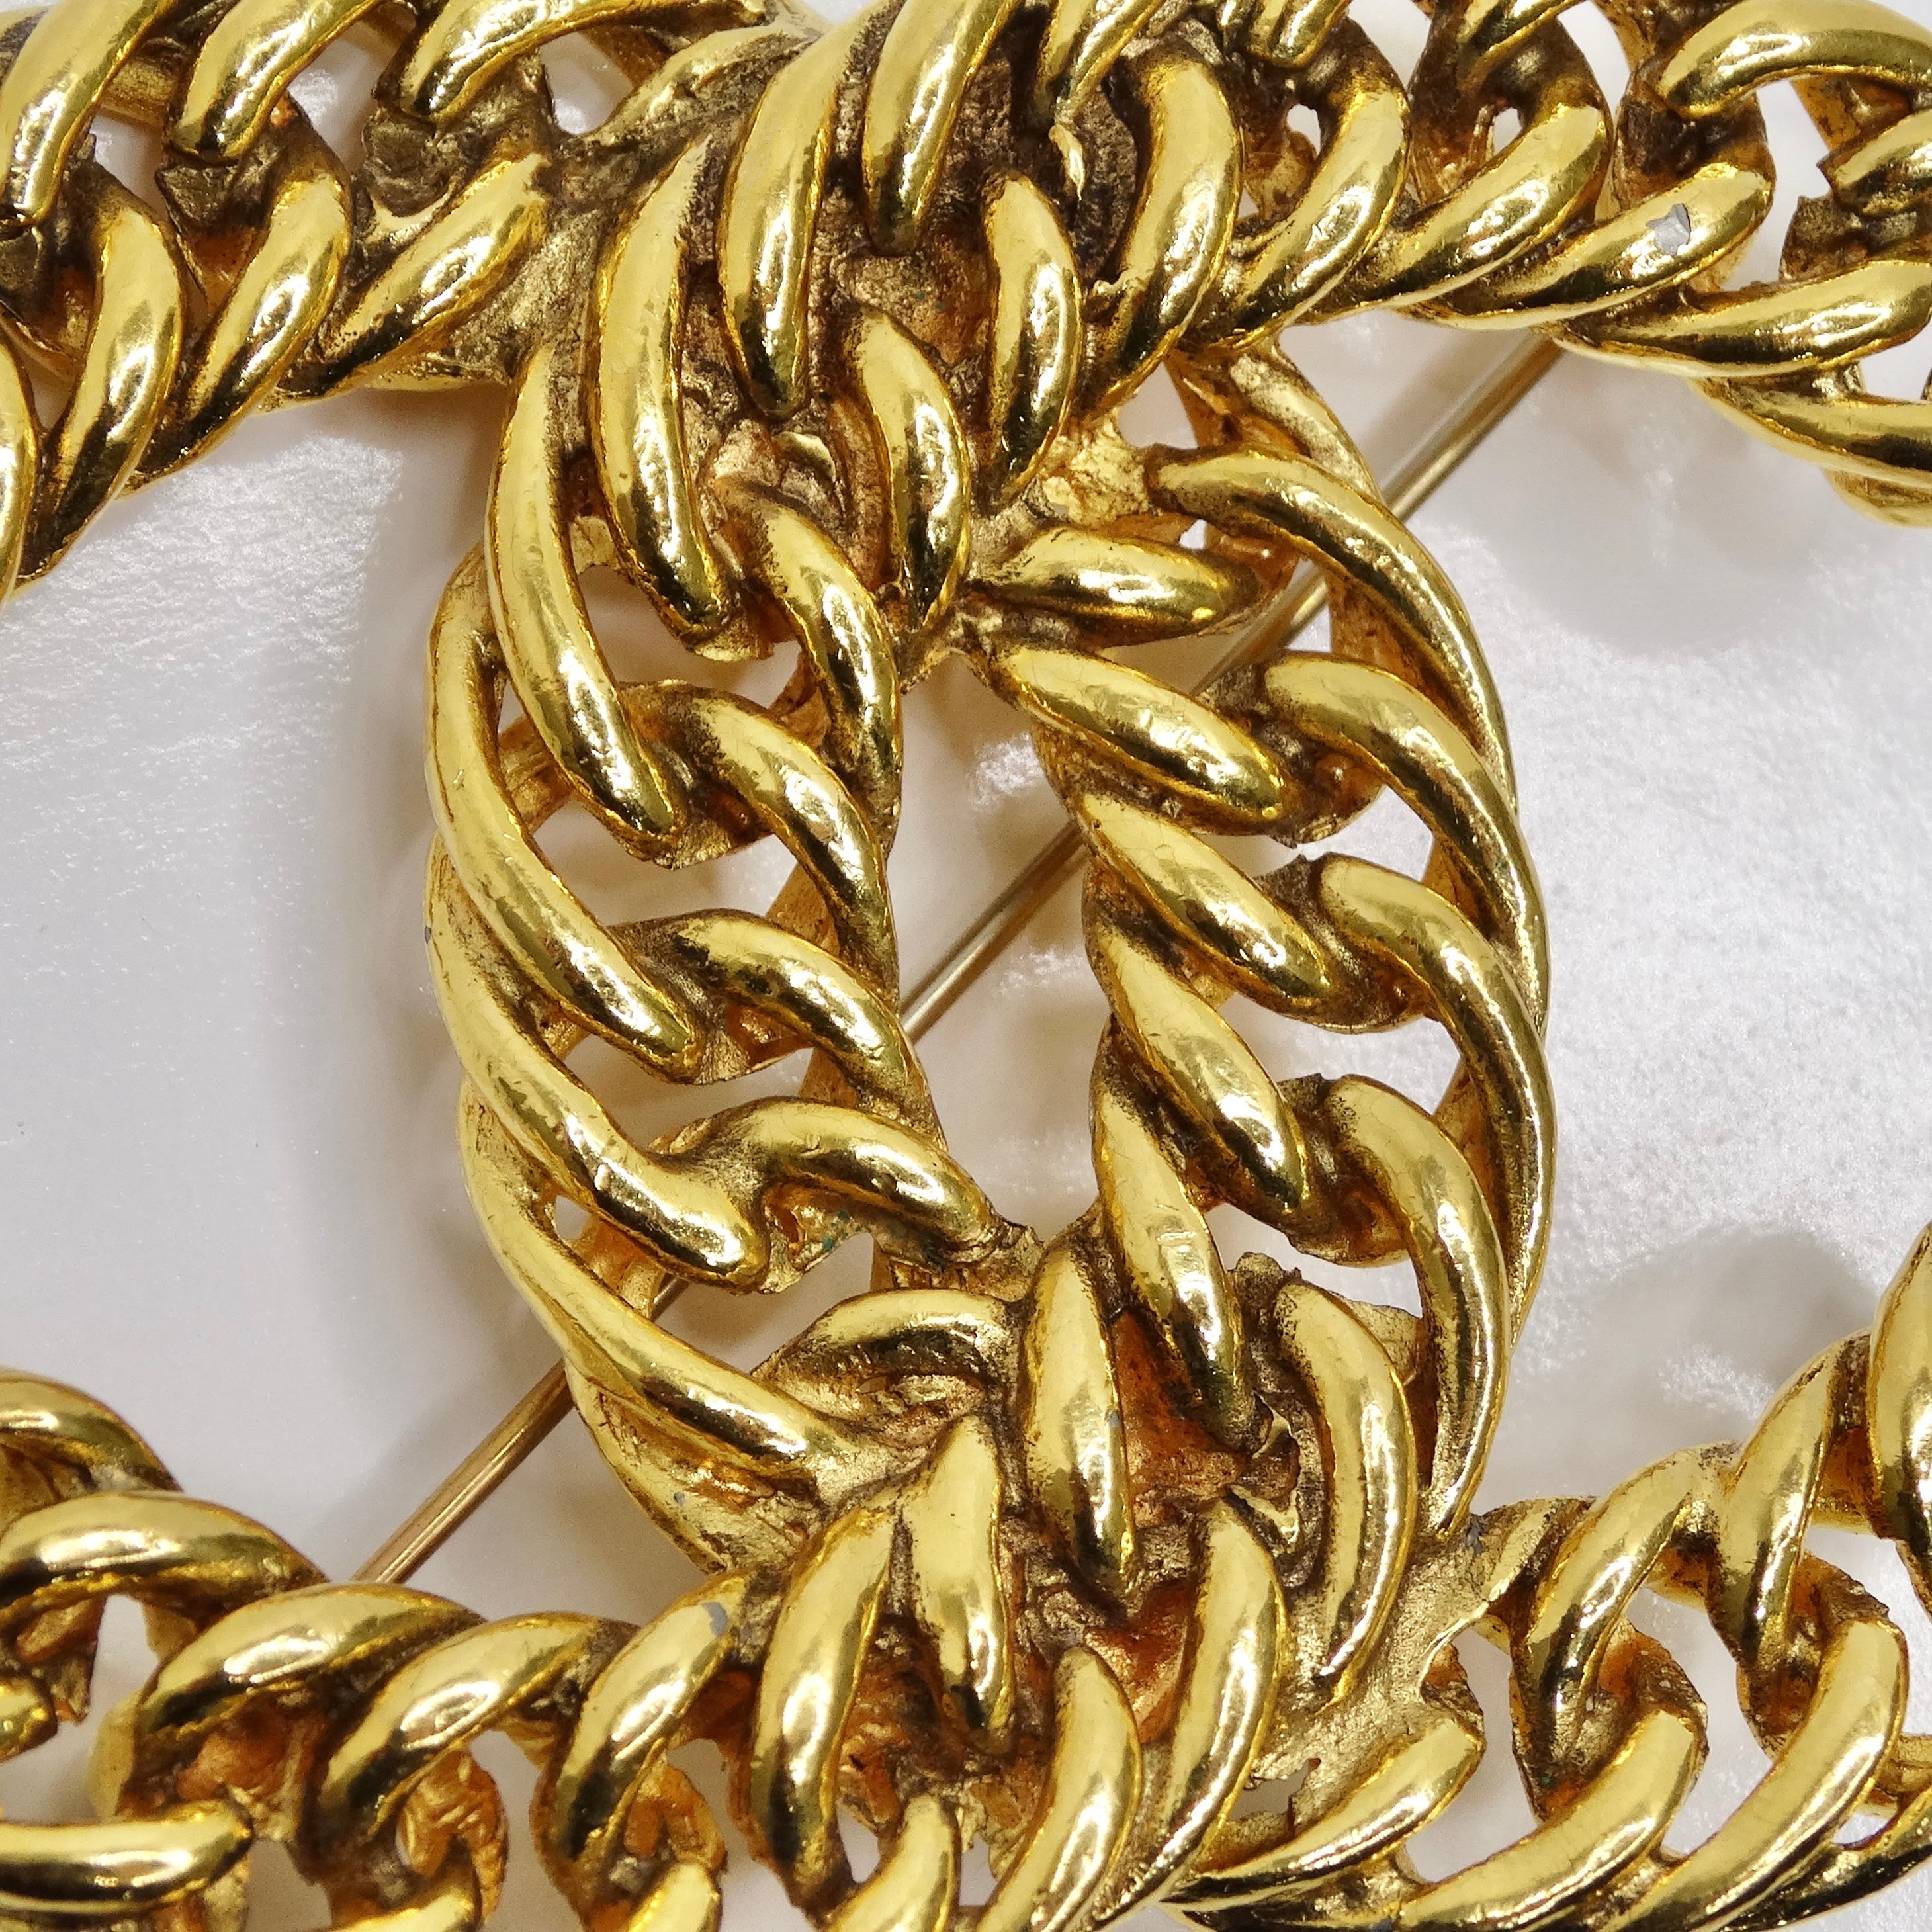 Die Chanel 1980s 24K Gold Plated CC Chain Brooch ist ein zeitloses und elegantes Accessoire, das jedem Ensemble einen Hauch von Vintage Chanel Raffinesse verleiht. Diese Brosche aus luxuriösem, 24 Karat vergoldetem Metall zeigt das ikonische CC-Logo